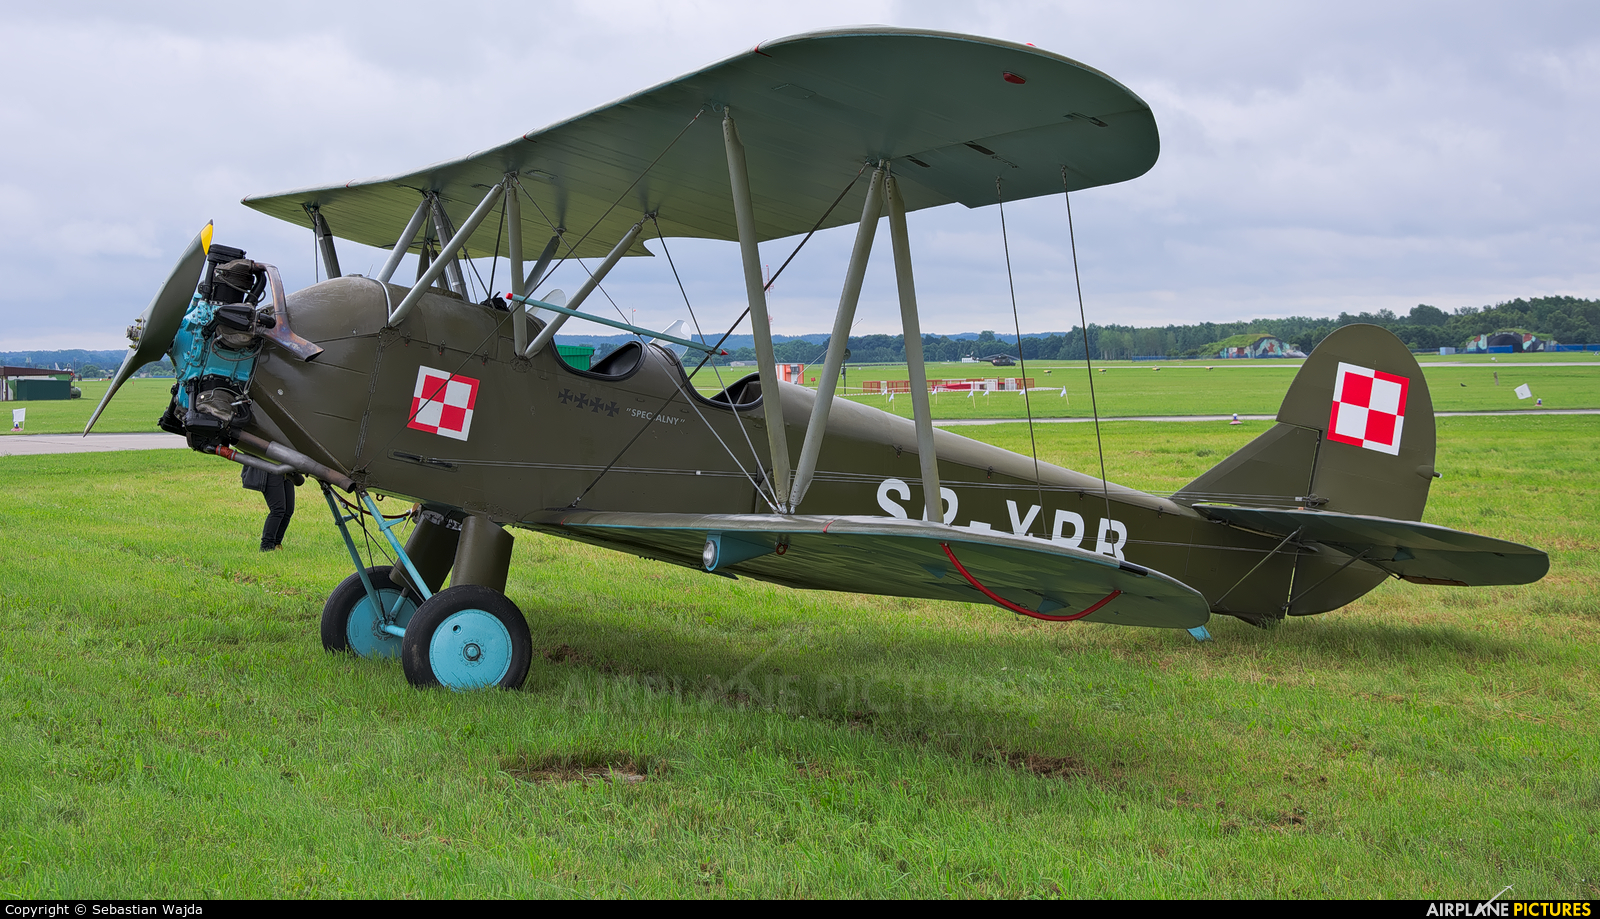 Silvair SP-YPB aircraft at Świdwin